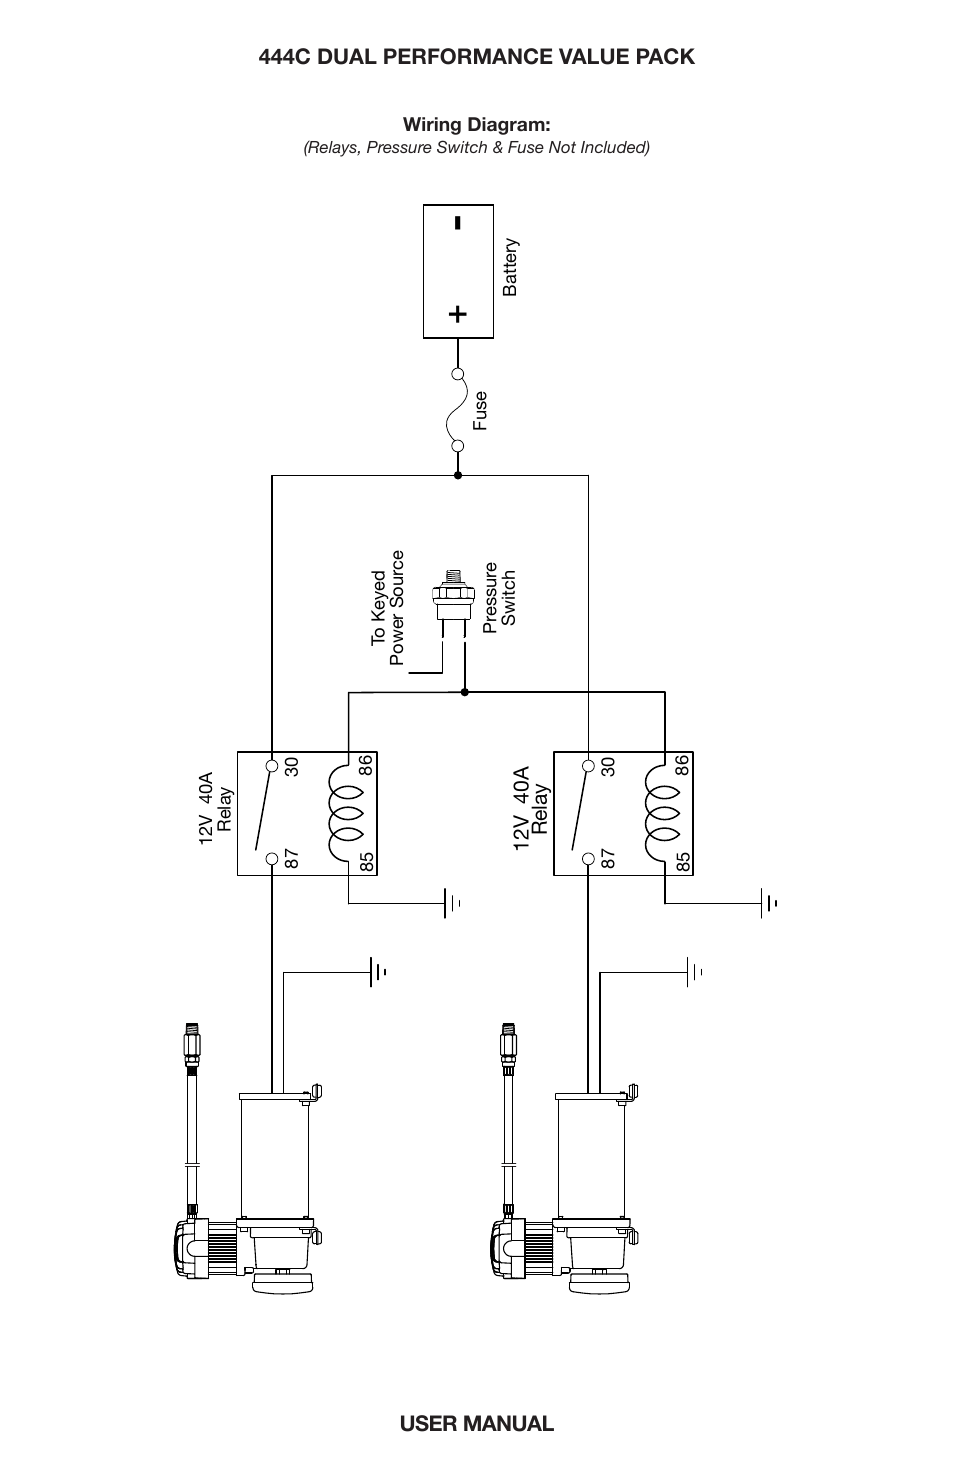 Dual “c” model compressor wiring diagram | VIAIR 444C Dual User Manual | Page 7 / 8